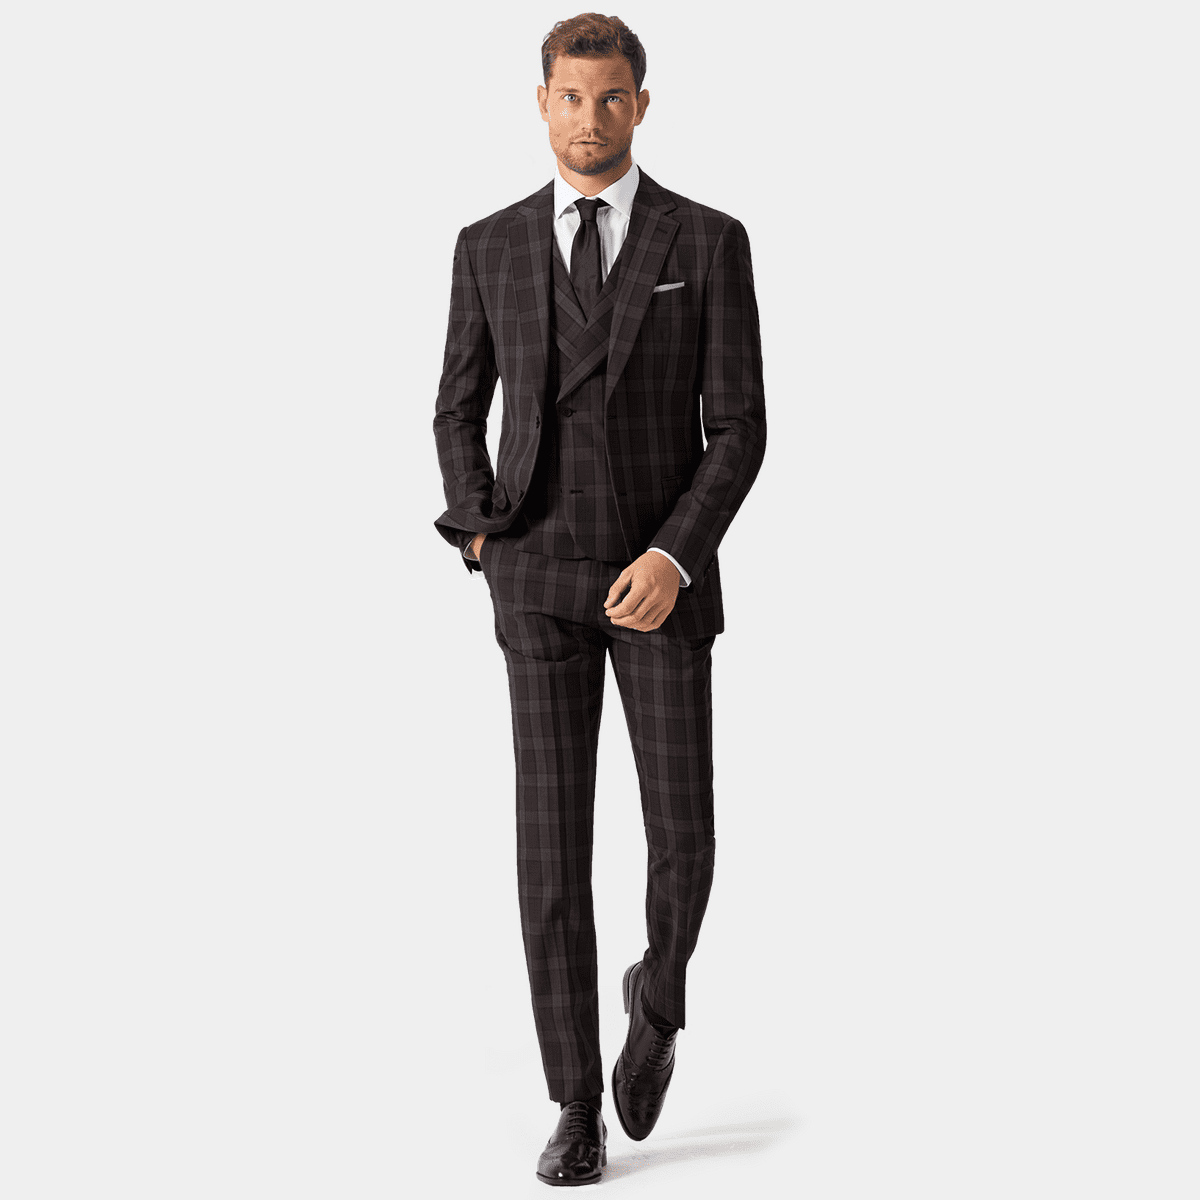 MONDAYSUIT Mens Slim-FIT 3-Piece Striped Suit Set with 2-Button Tuxedo Vest